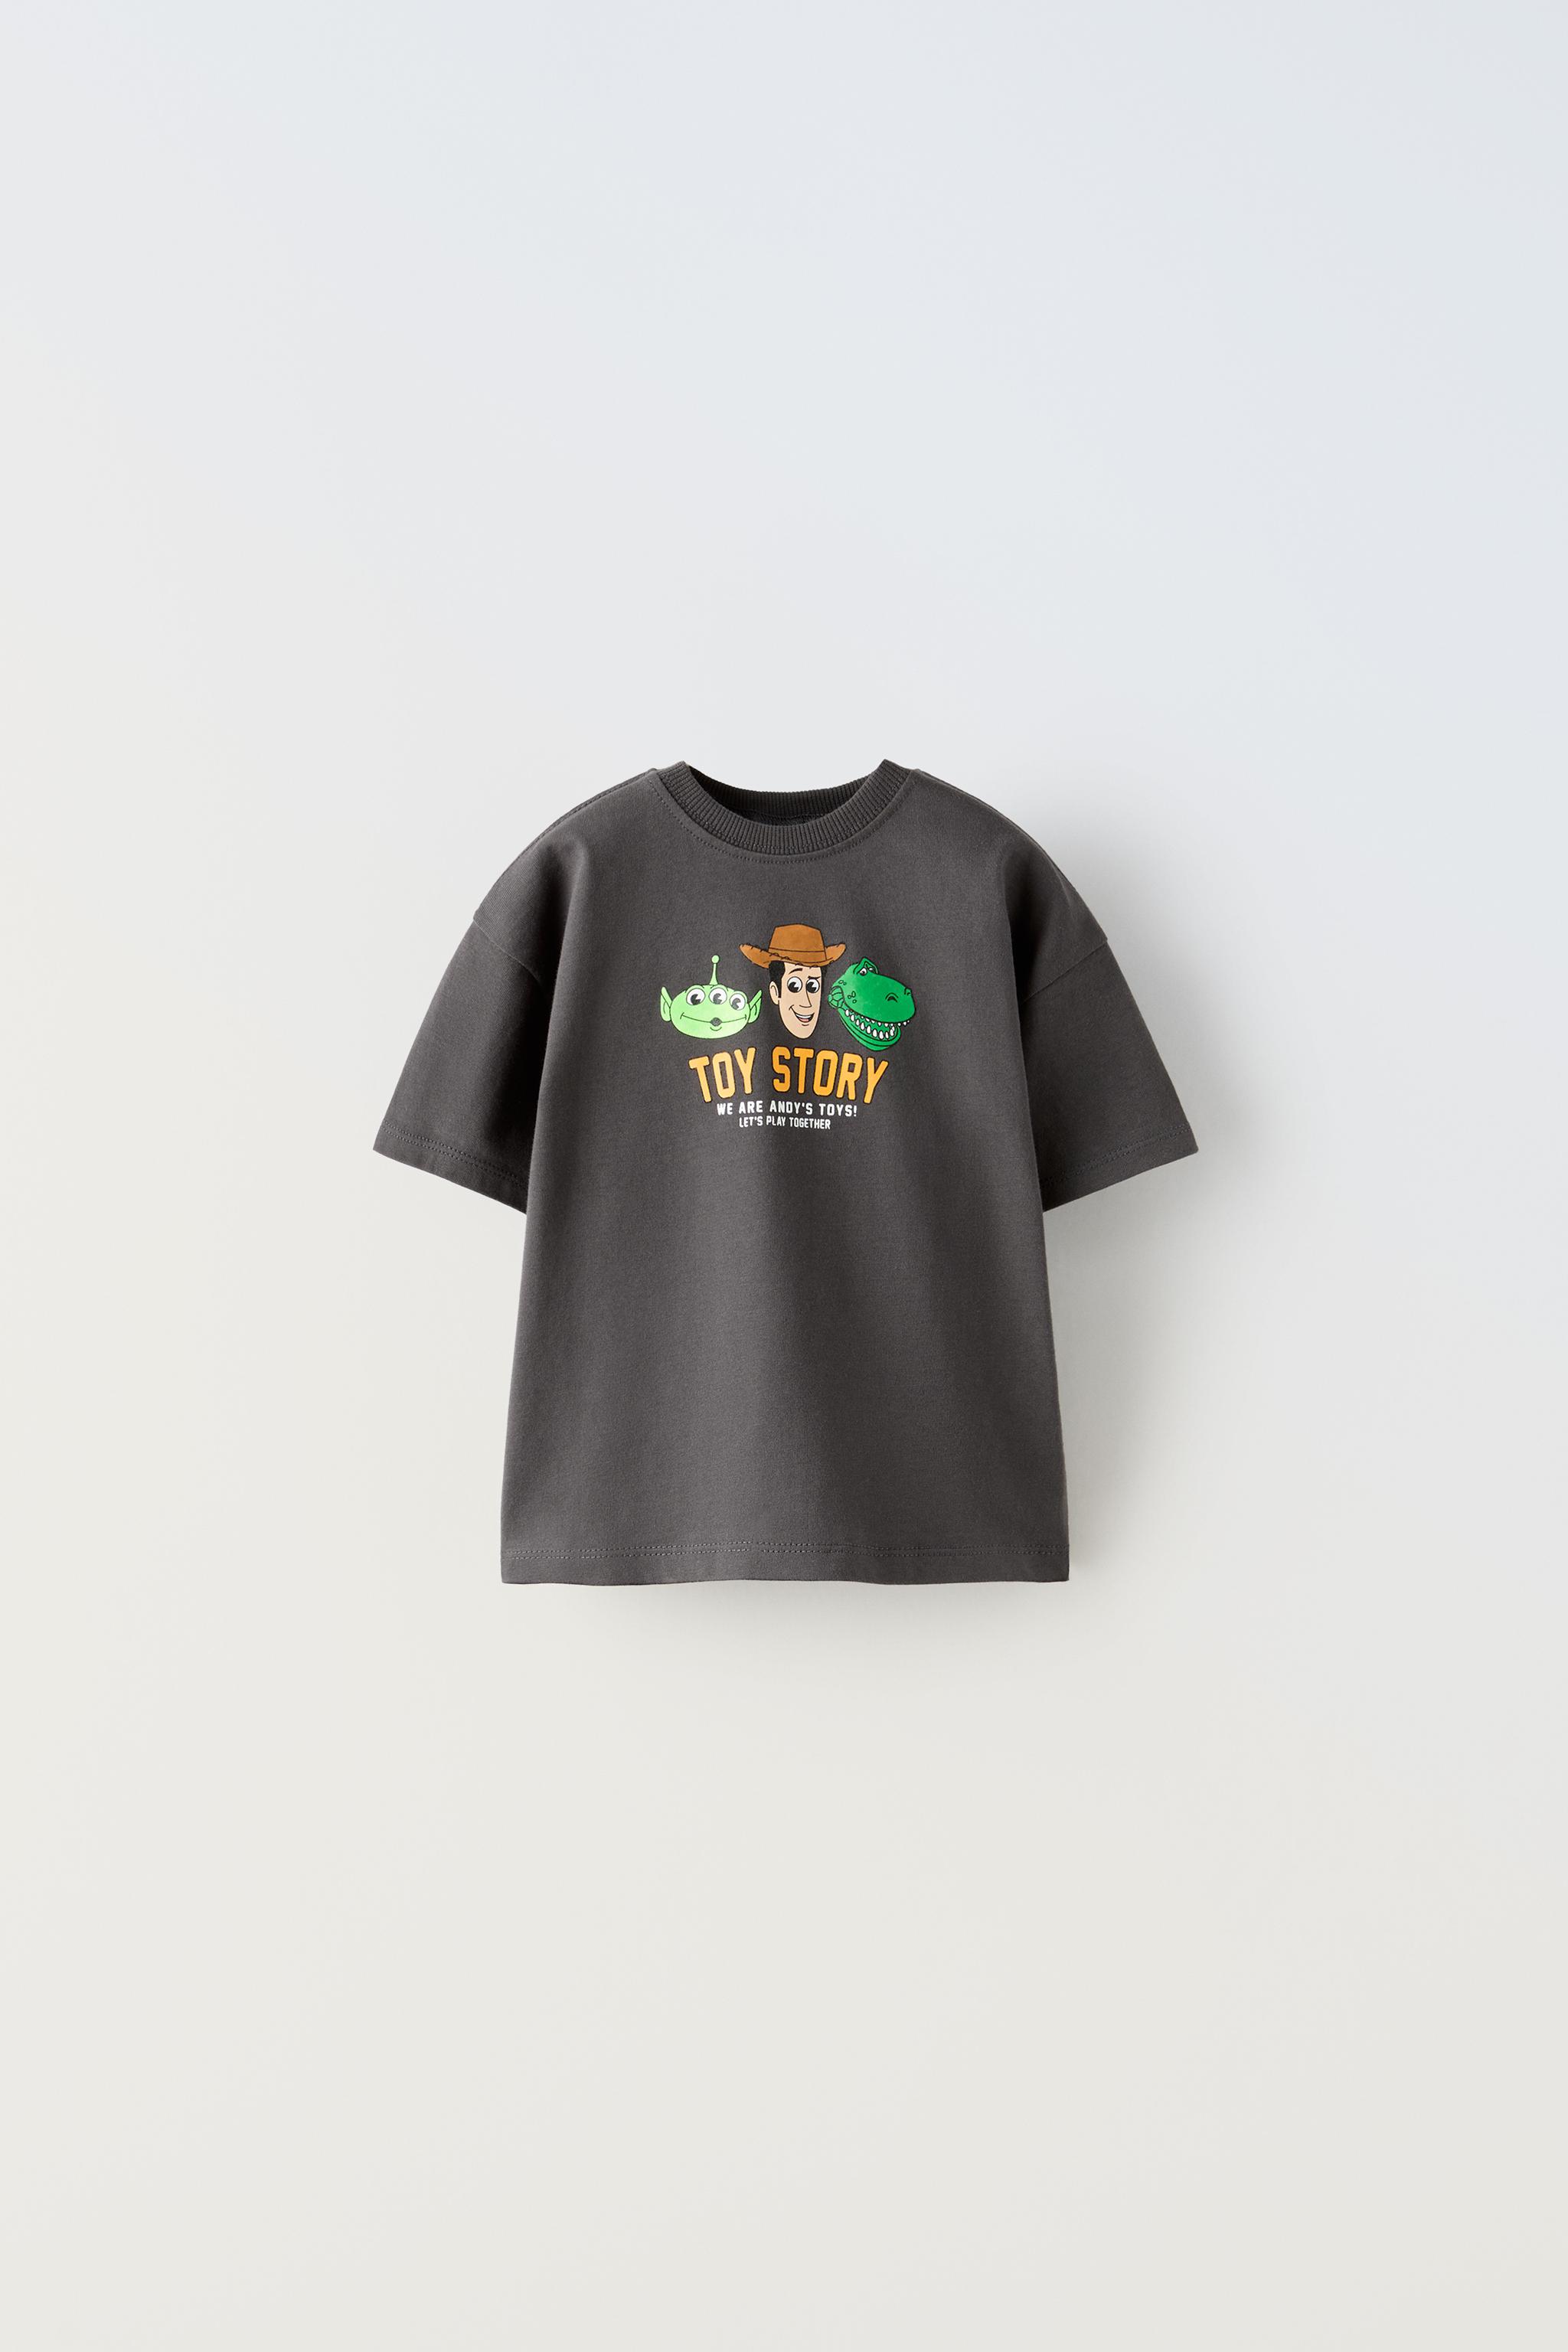 T-shirt da Zara Boys Mickey da Disney Galveias • OLX Portugal